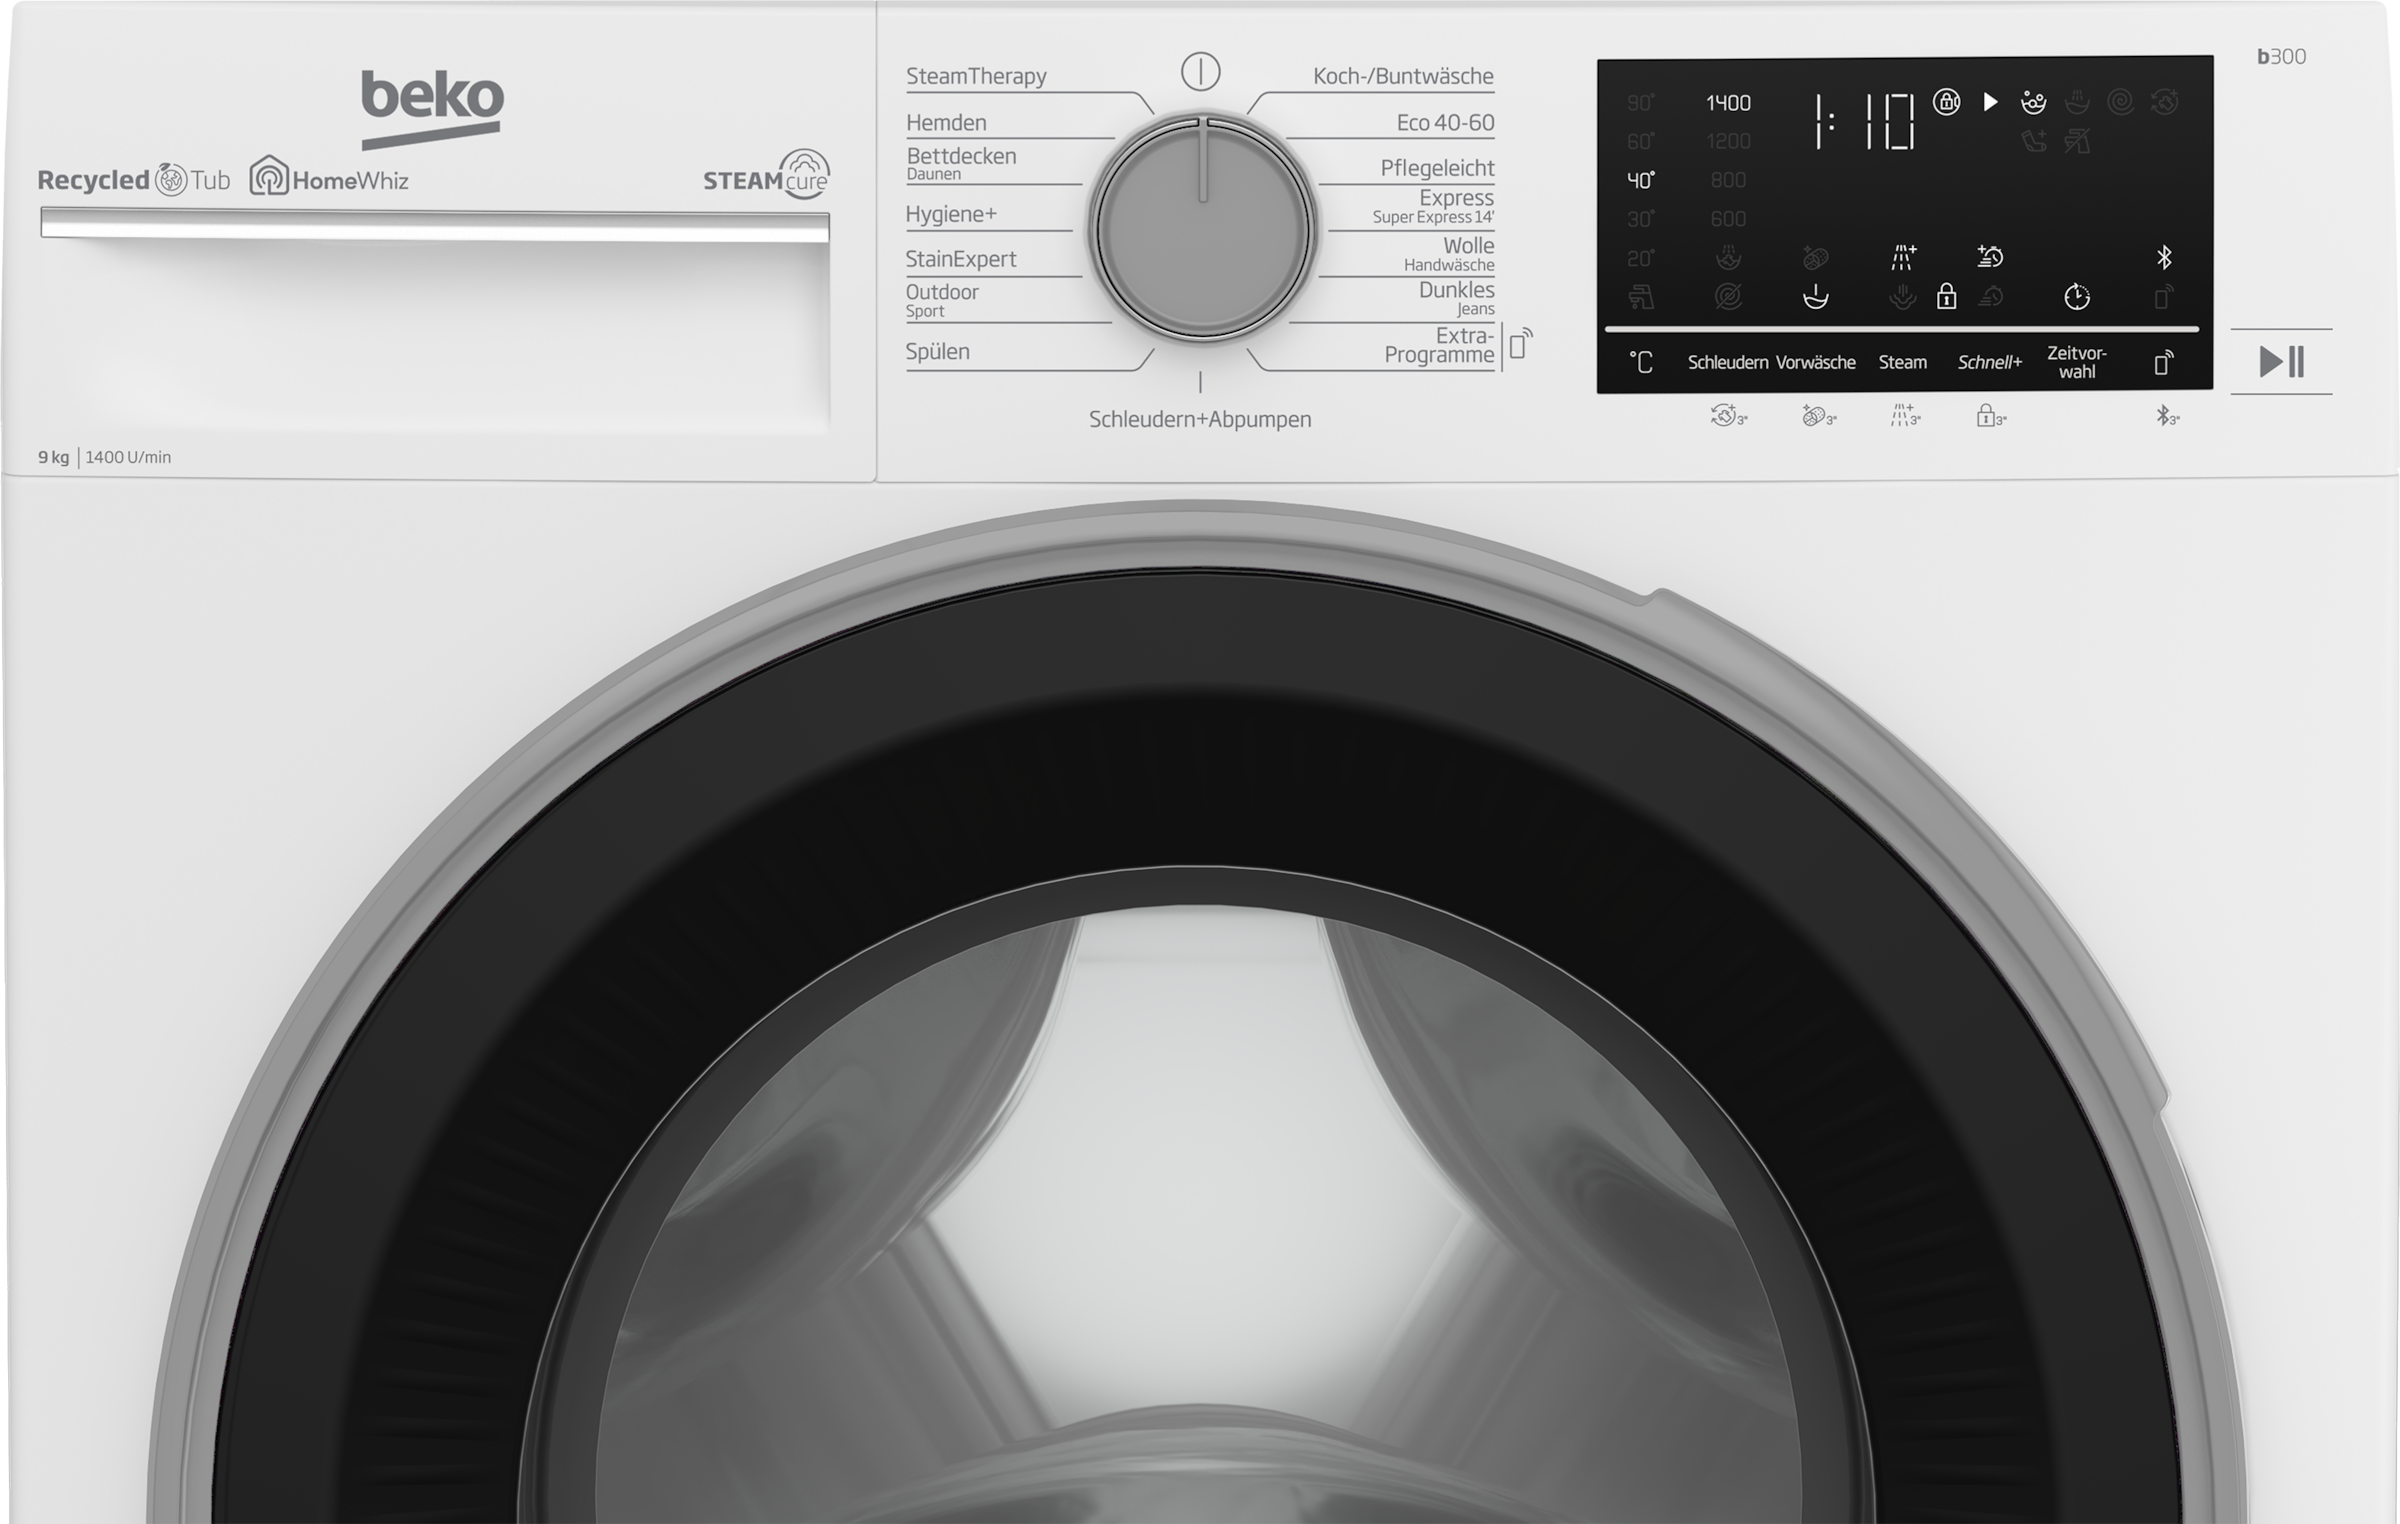 BEKO Waschmaschine, b300, B3WFU59415W2, U/min, 99% 9 online kaufen - SteamCure allergenfrei 1400 kg